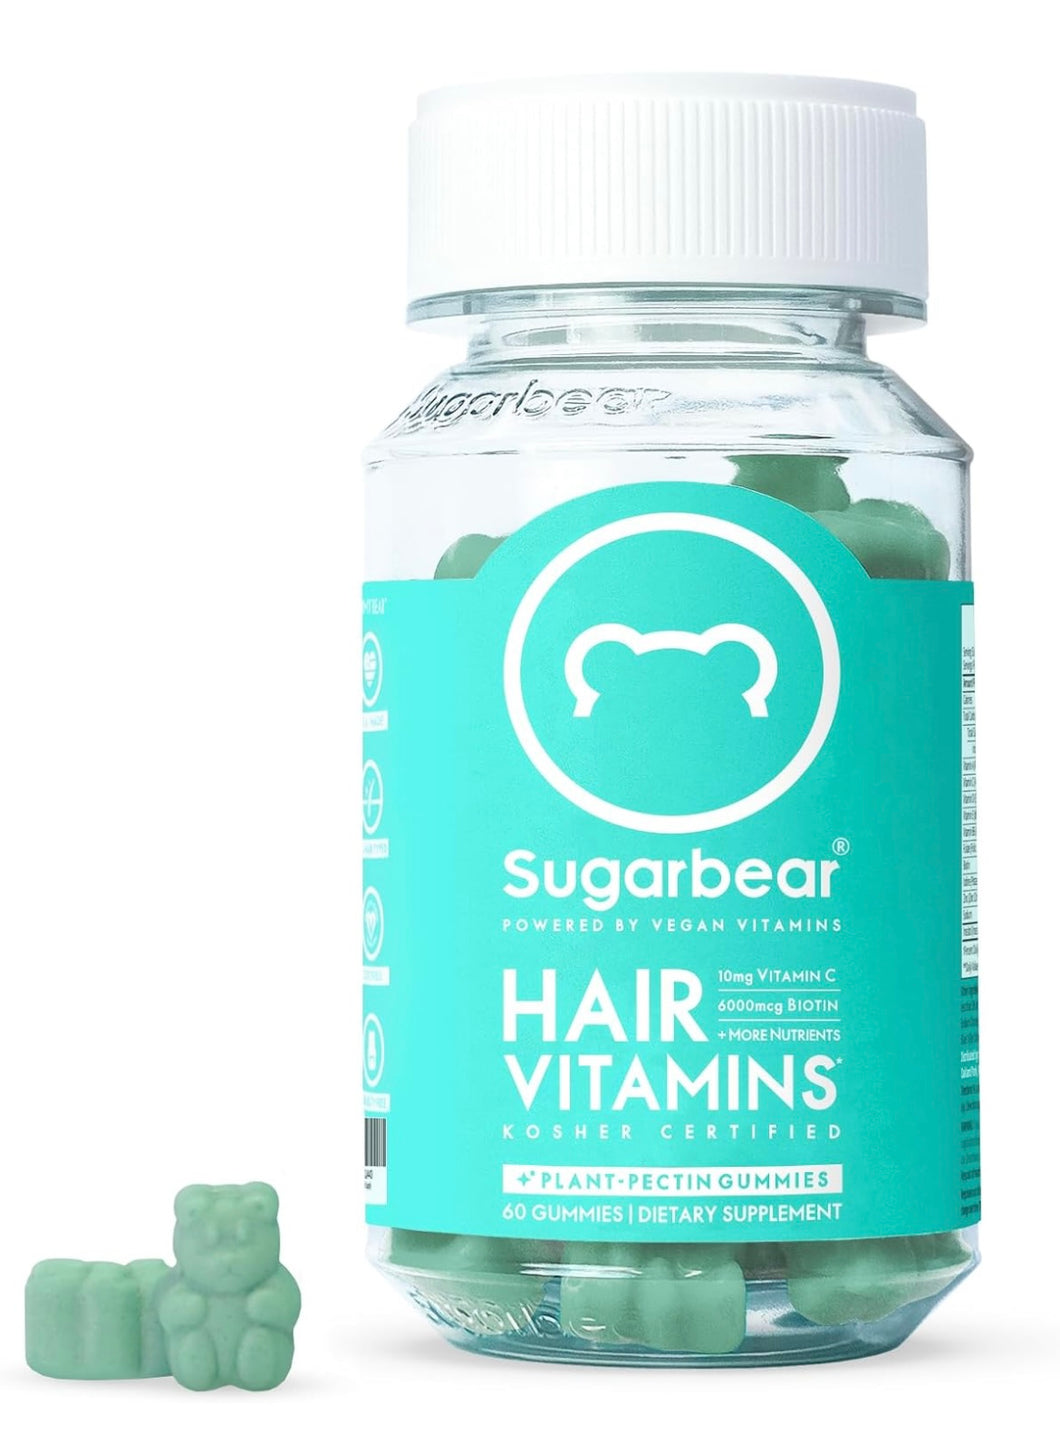 SUGARBEAR hair vitamins